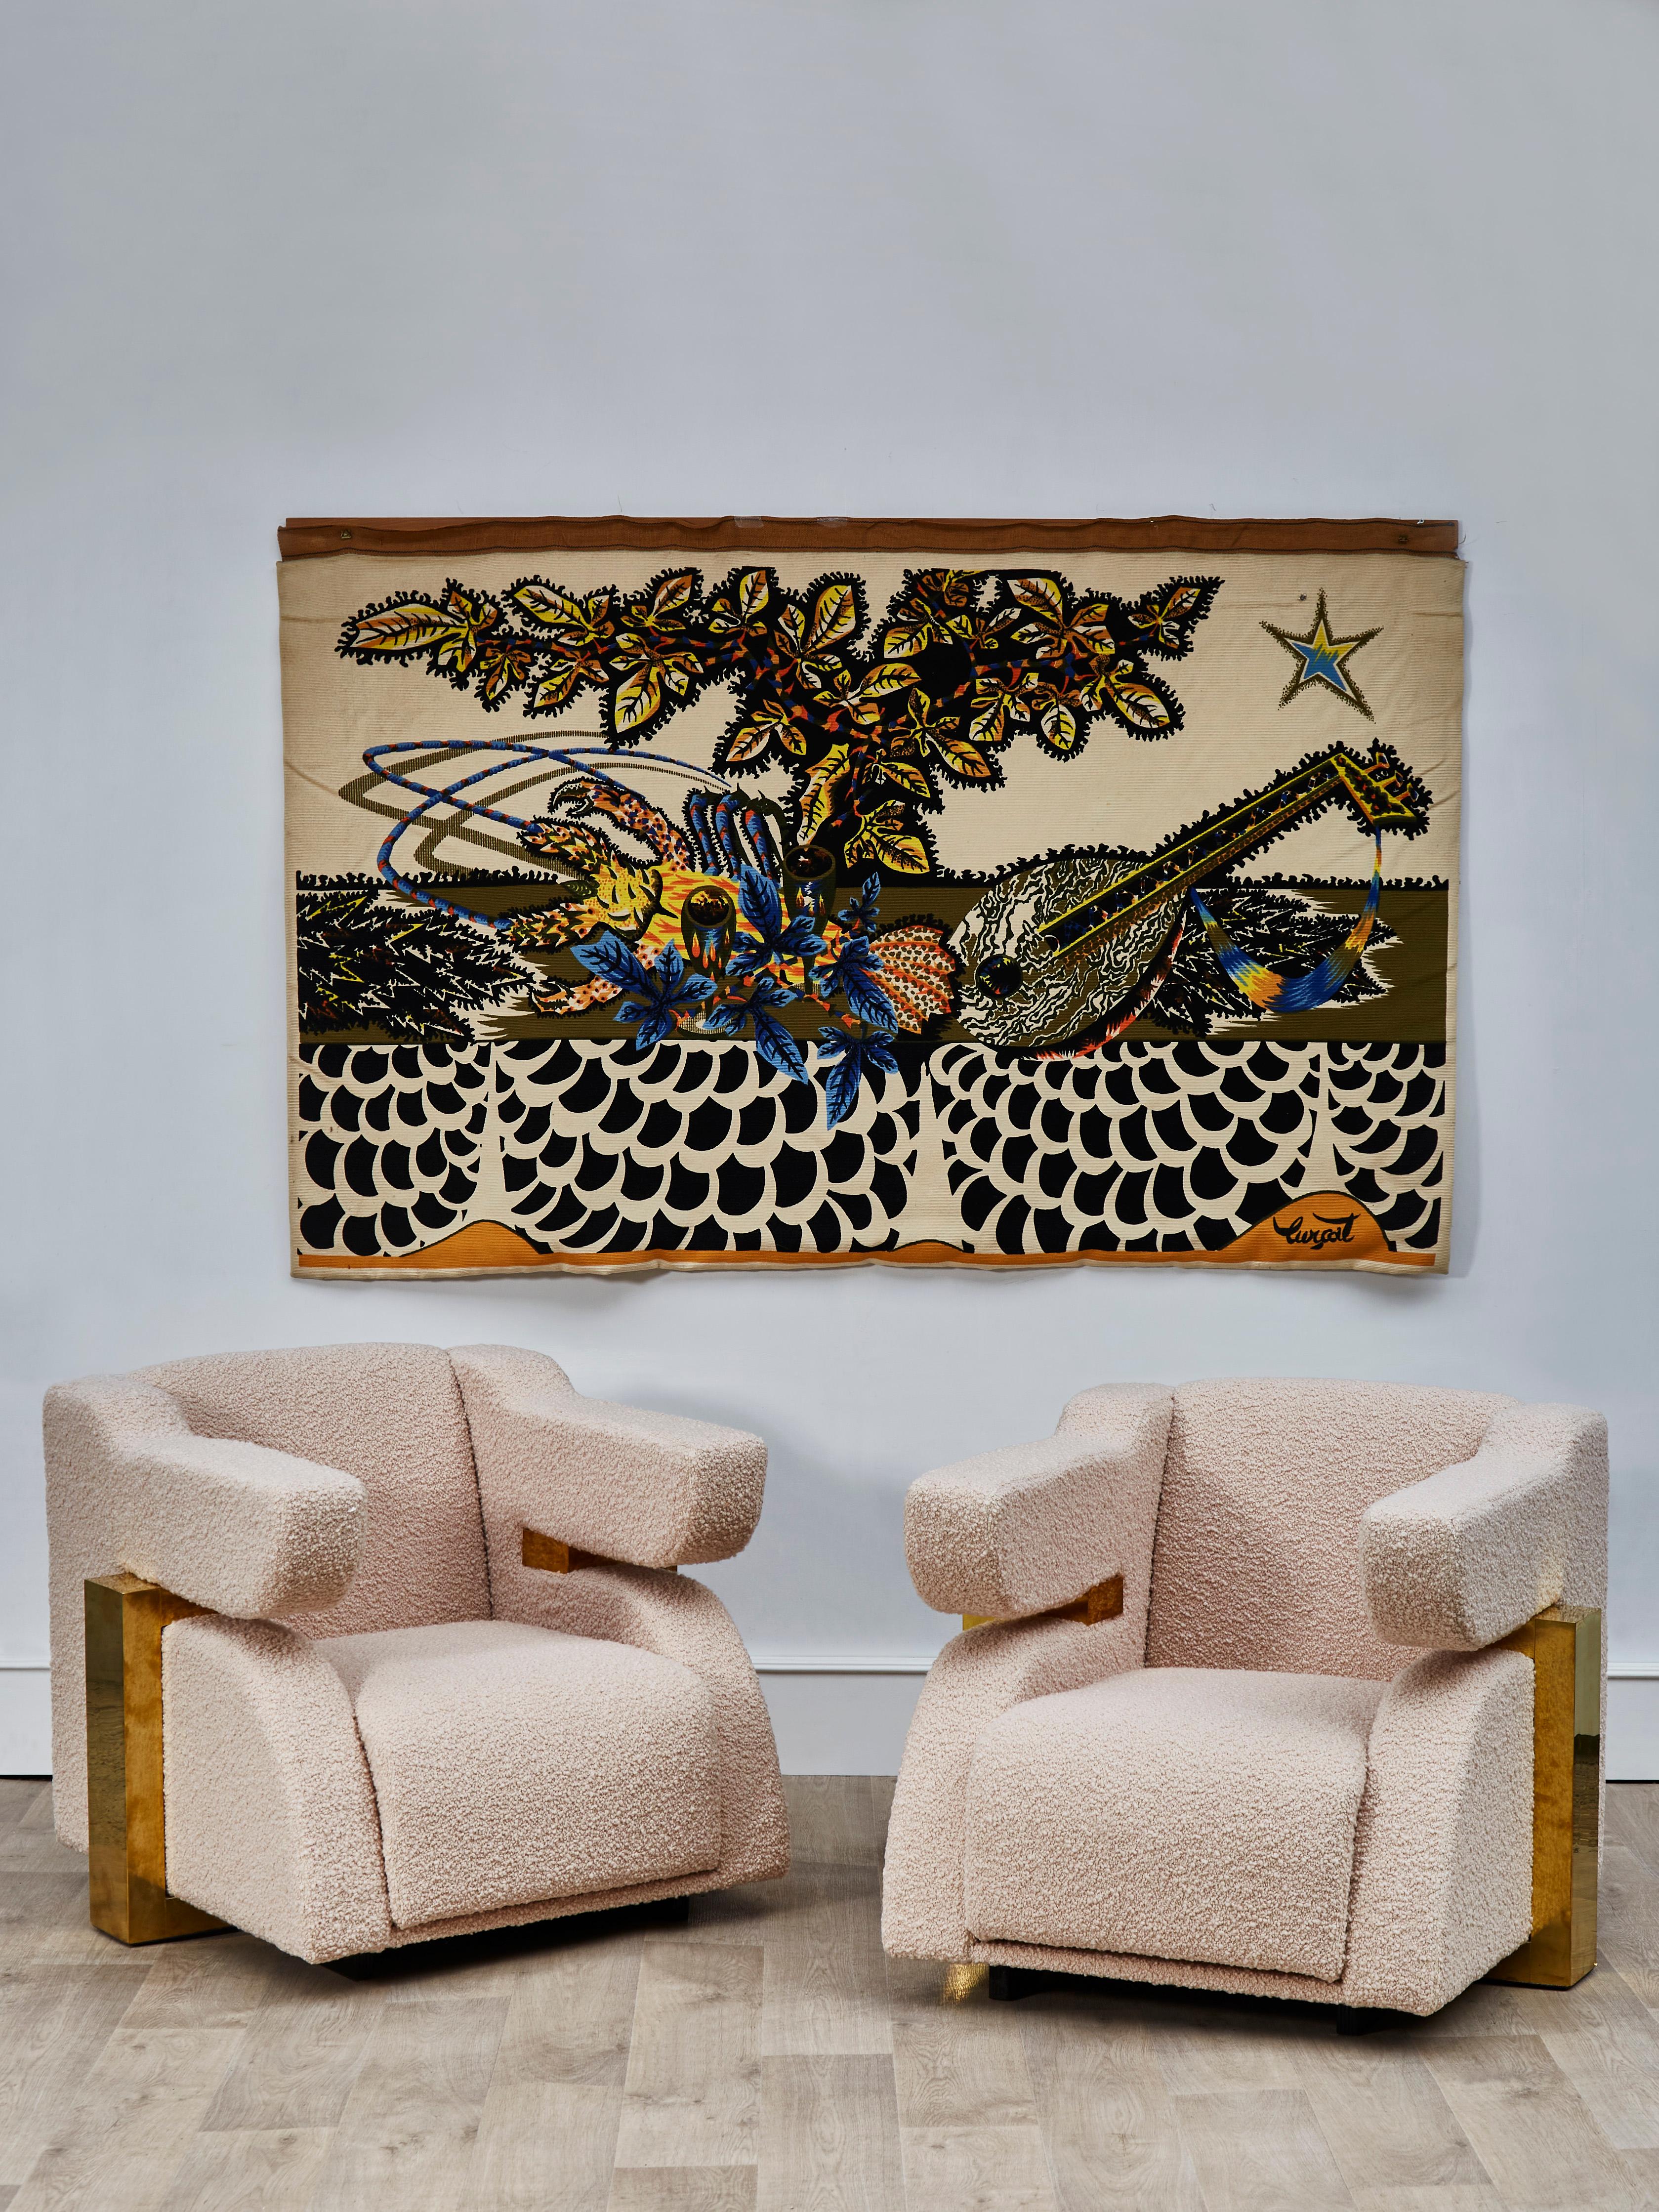 Wunderschönes Sesselpaar mit Messingstruktur, bezogen mit einem Bouclette-Stoff von Pierre Frey.
Gestaltung durch Studio Glustin.
(2 Paare verfügbar).